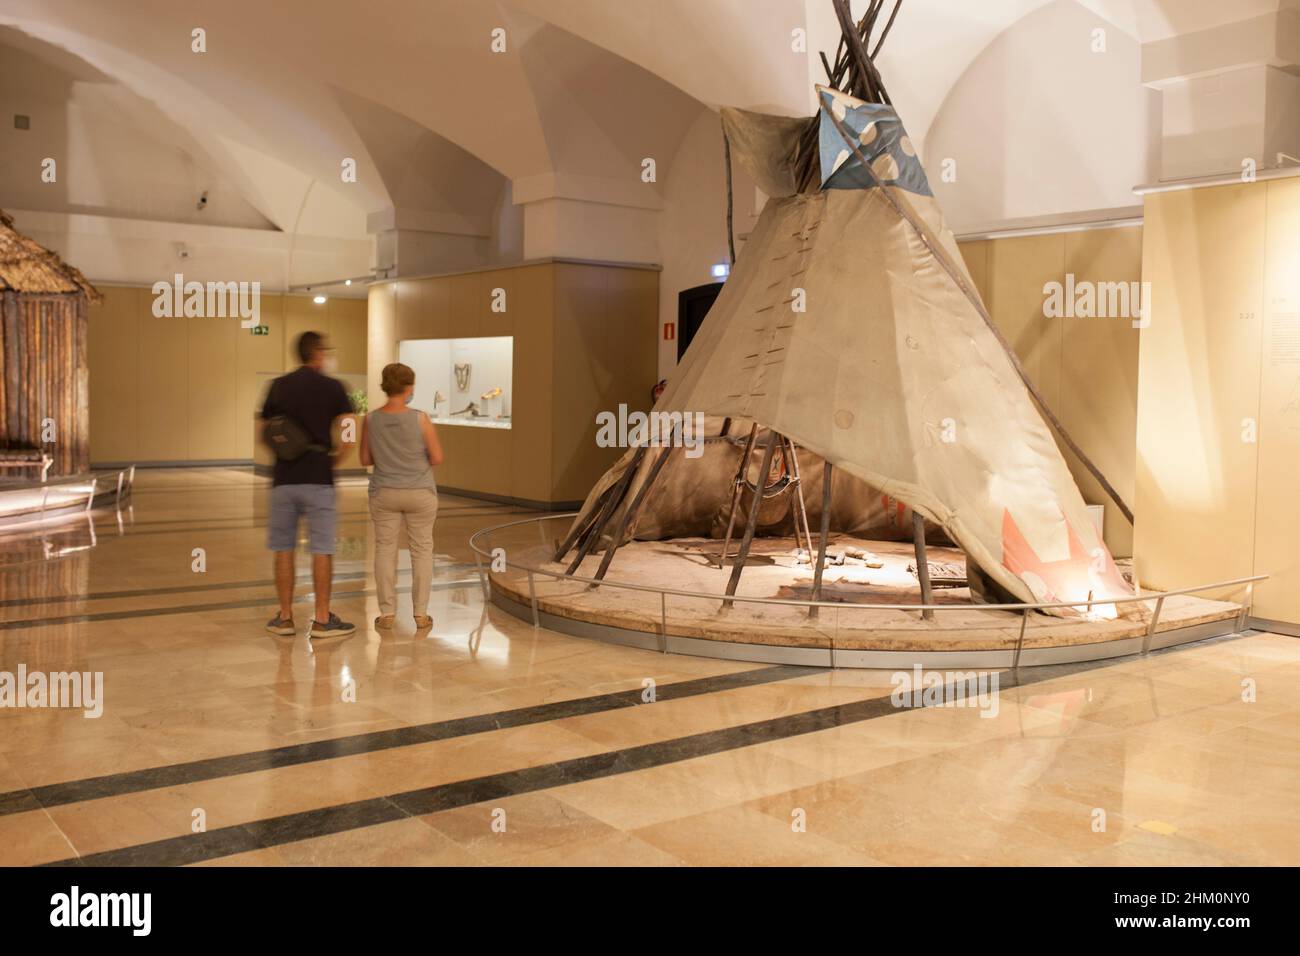 Madrid, Spanien - 11th. Jul 2020: Besucher beobachten das indische Zelt im Raum des Museum of the Americas – Madrid, Spanien Stockfoto